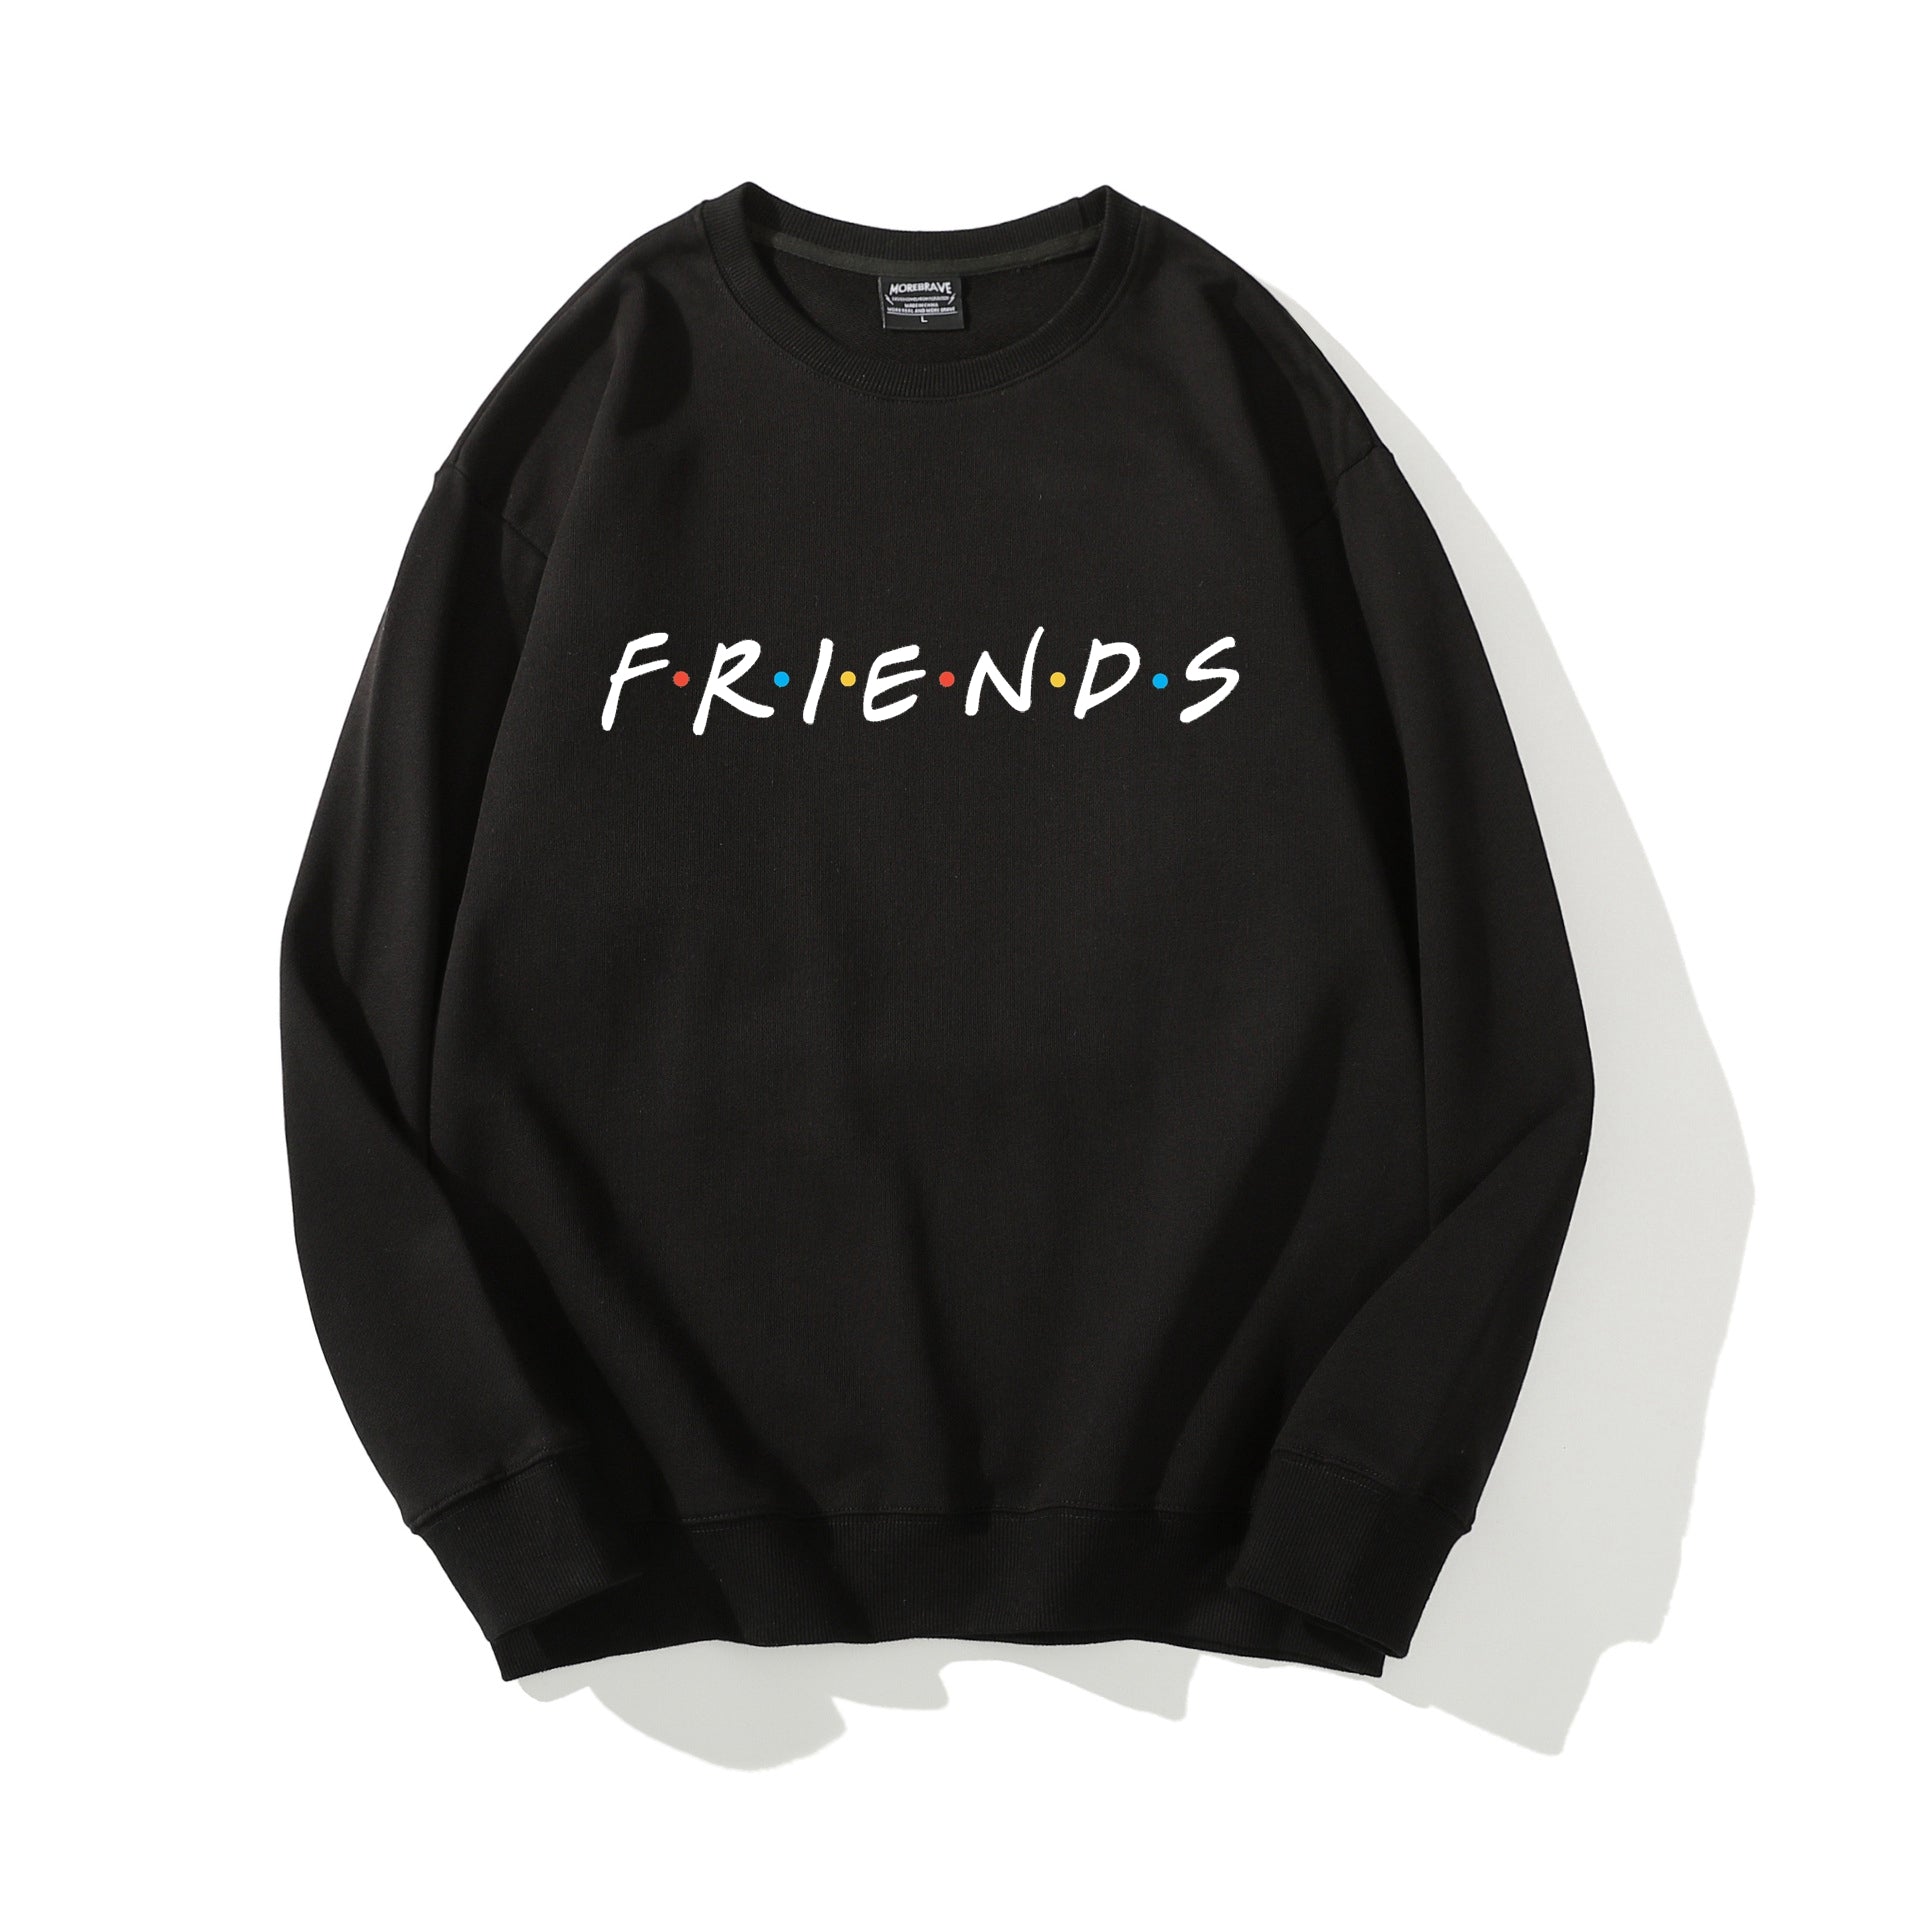 Friends Crewneck Sweatshirt Cotton Sweatshirt Outdoor Costume Ideal Present